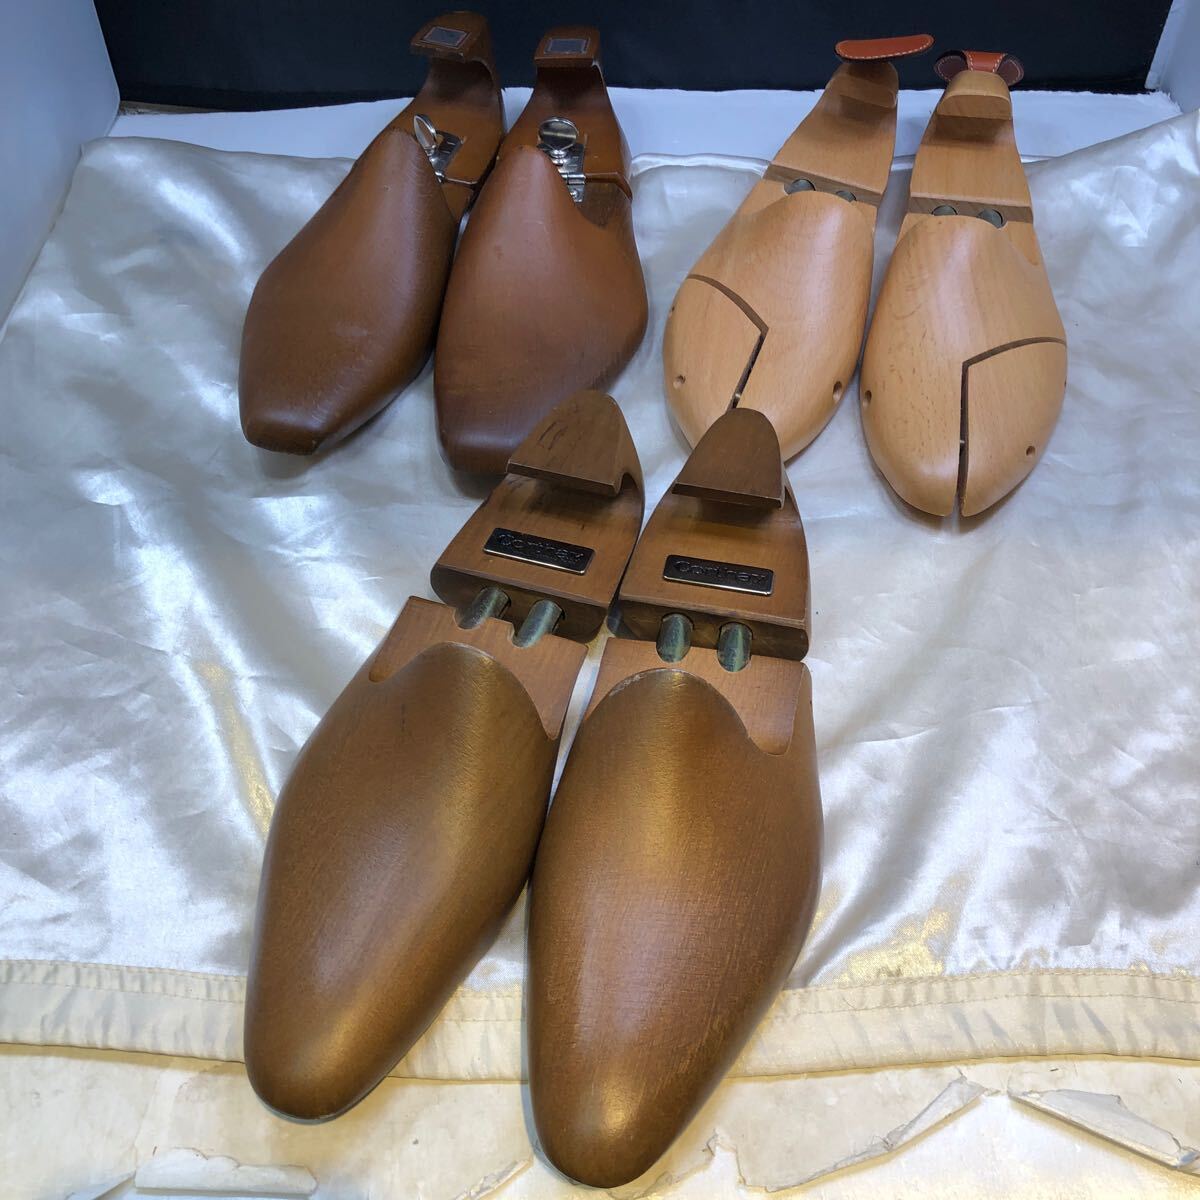 シューツリー 3組セット ザソブリンハウス コルドヌリ・アングレーズ コルテ 3ブランド シューキーパー 木製 紳士靴用 メンズシューズ用の画像1